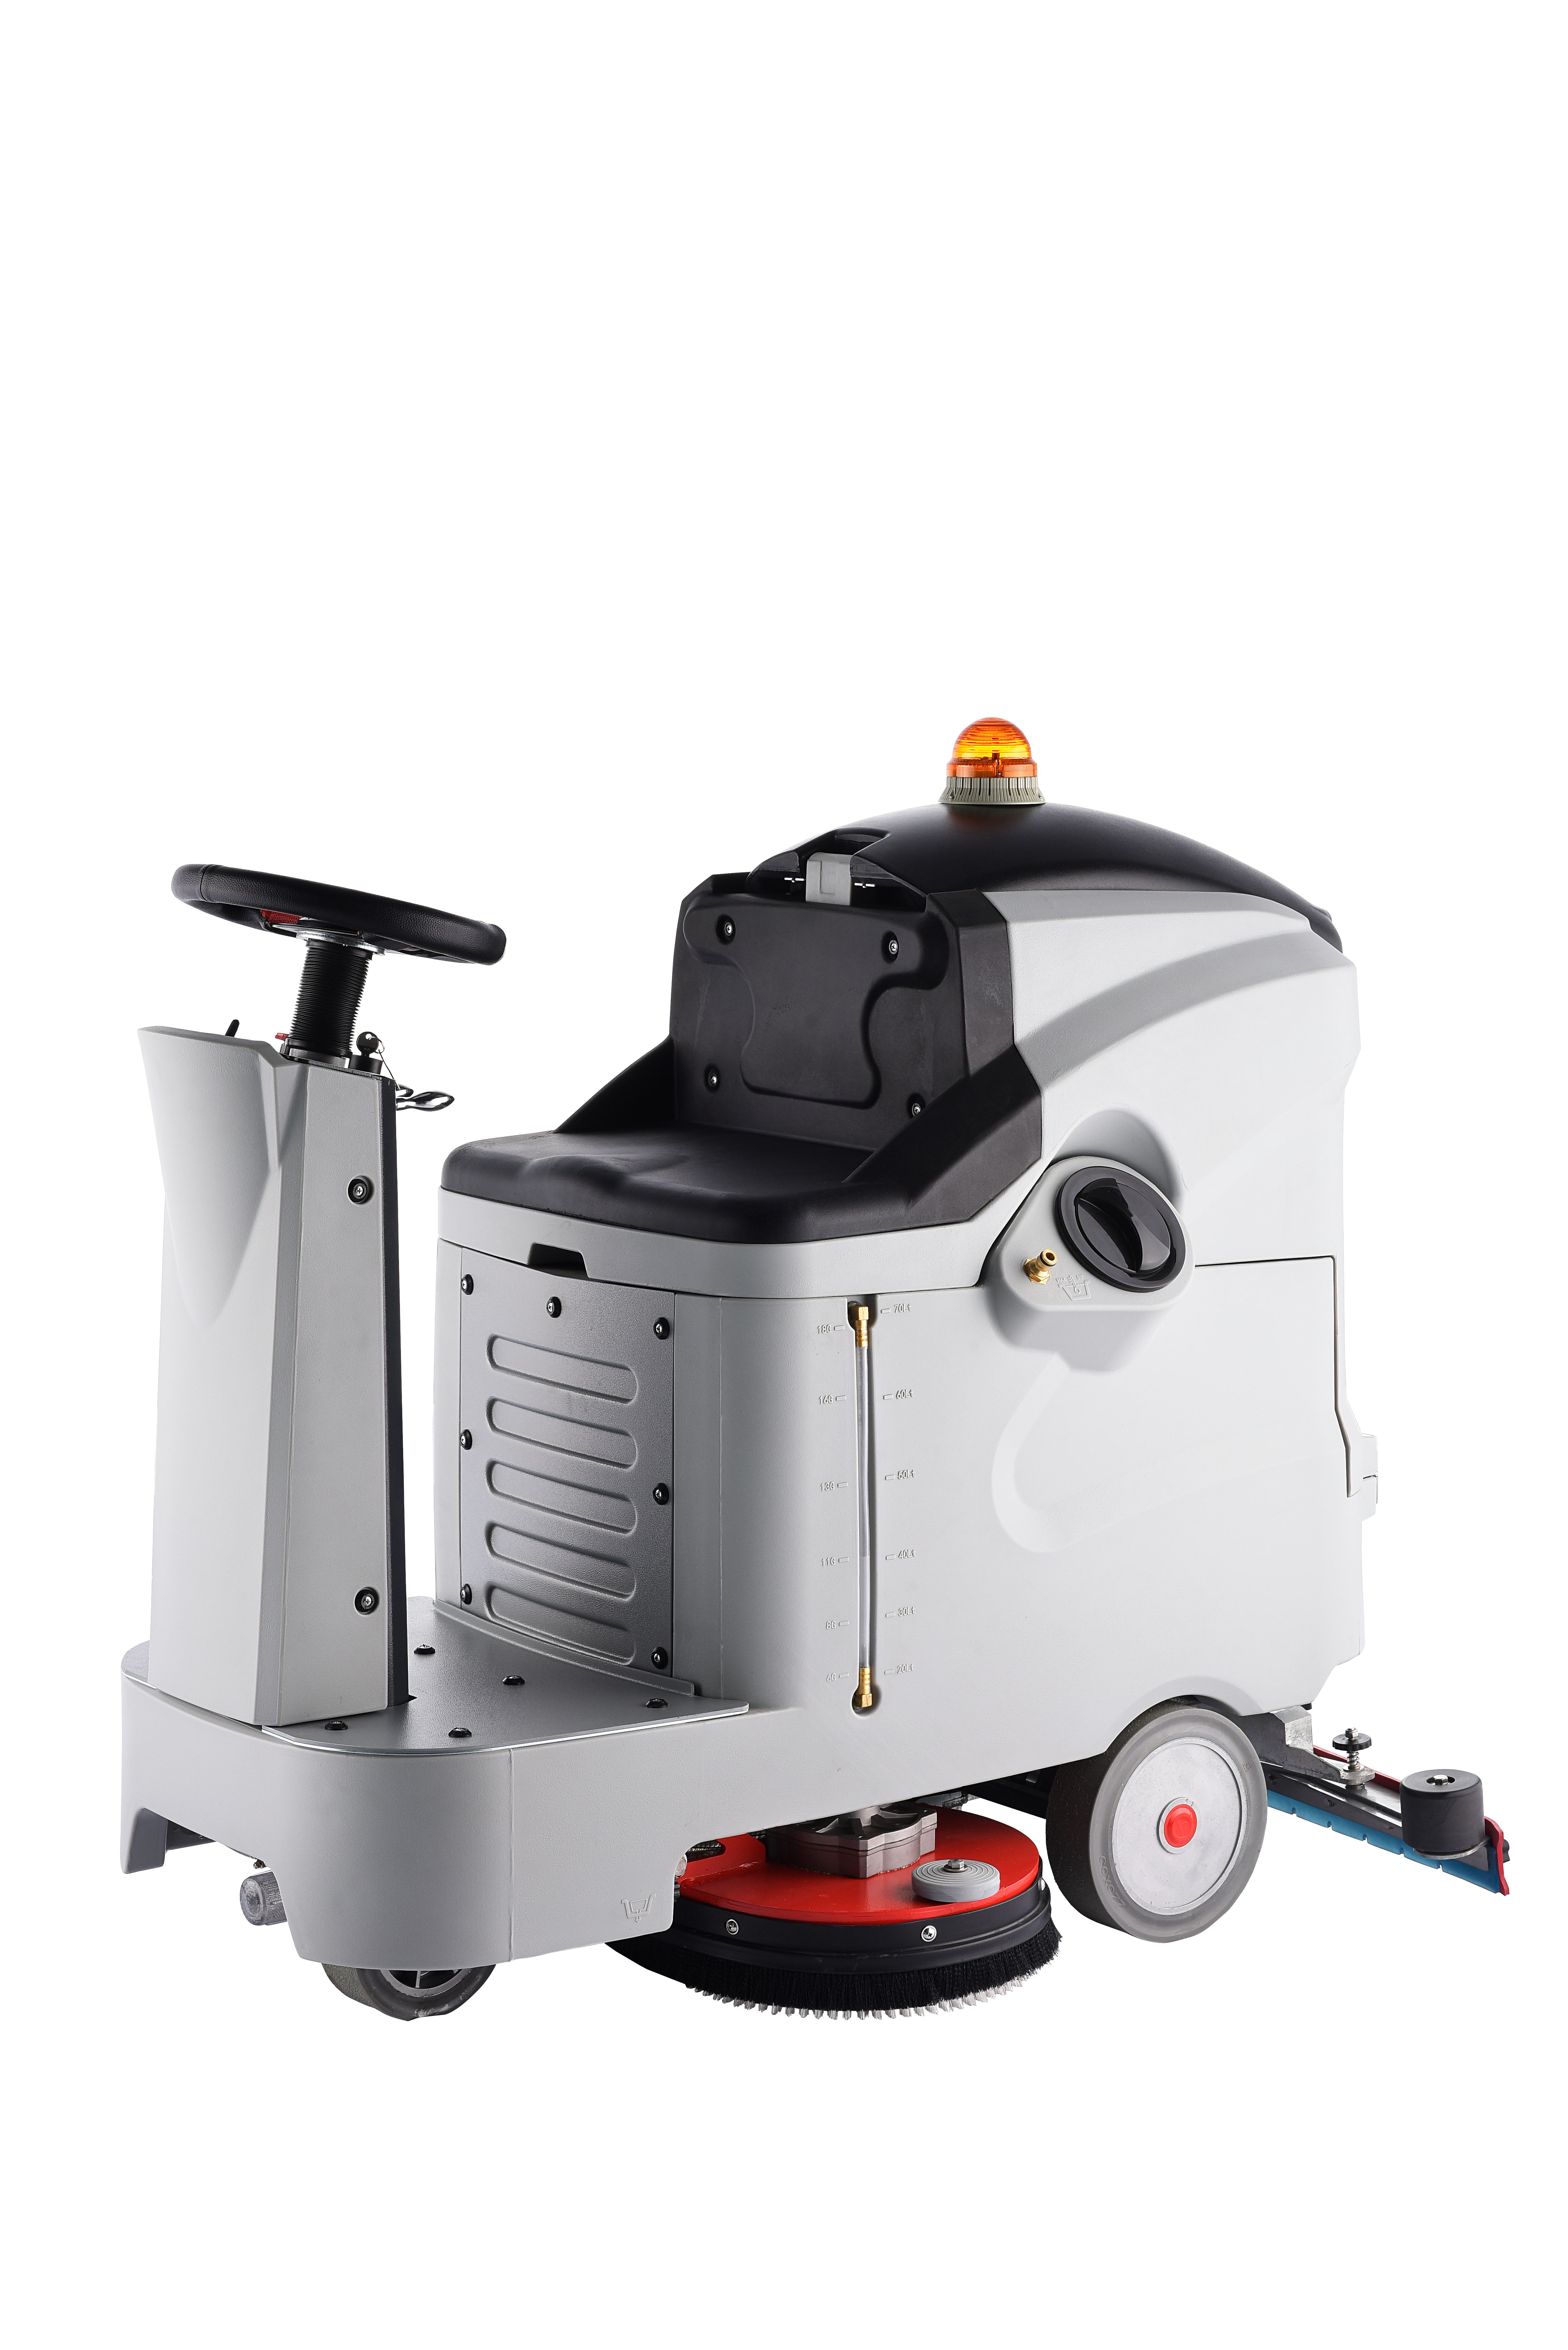 金华市科的/kediGBZ-660B厂家科的/kediGBZ-660B 驾驶型洗地机 除尘更快 水洗更方便 洁面更清洁 操作简单方便